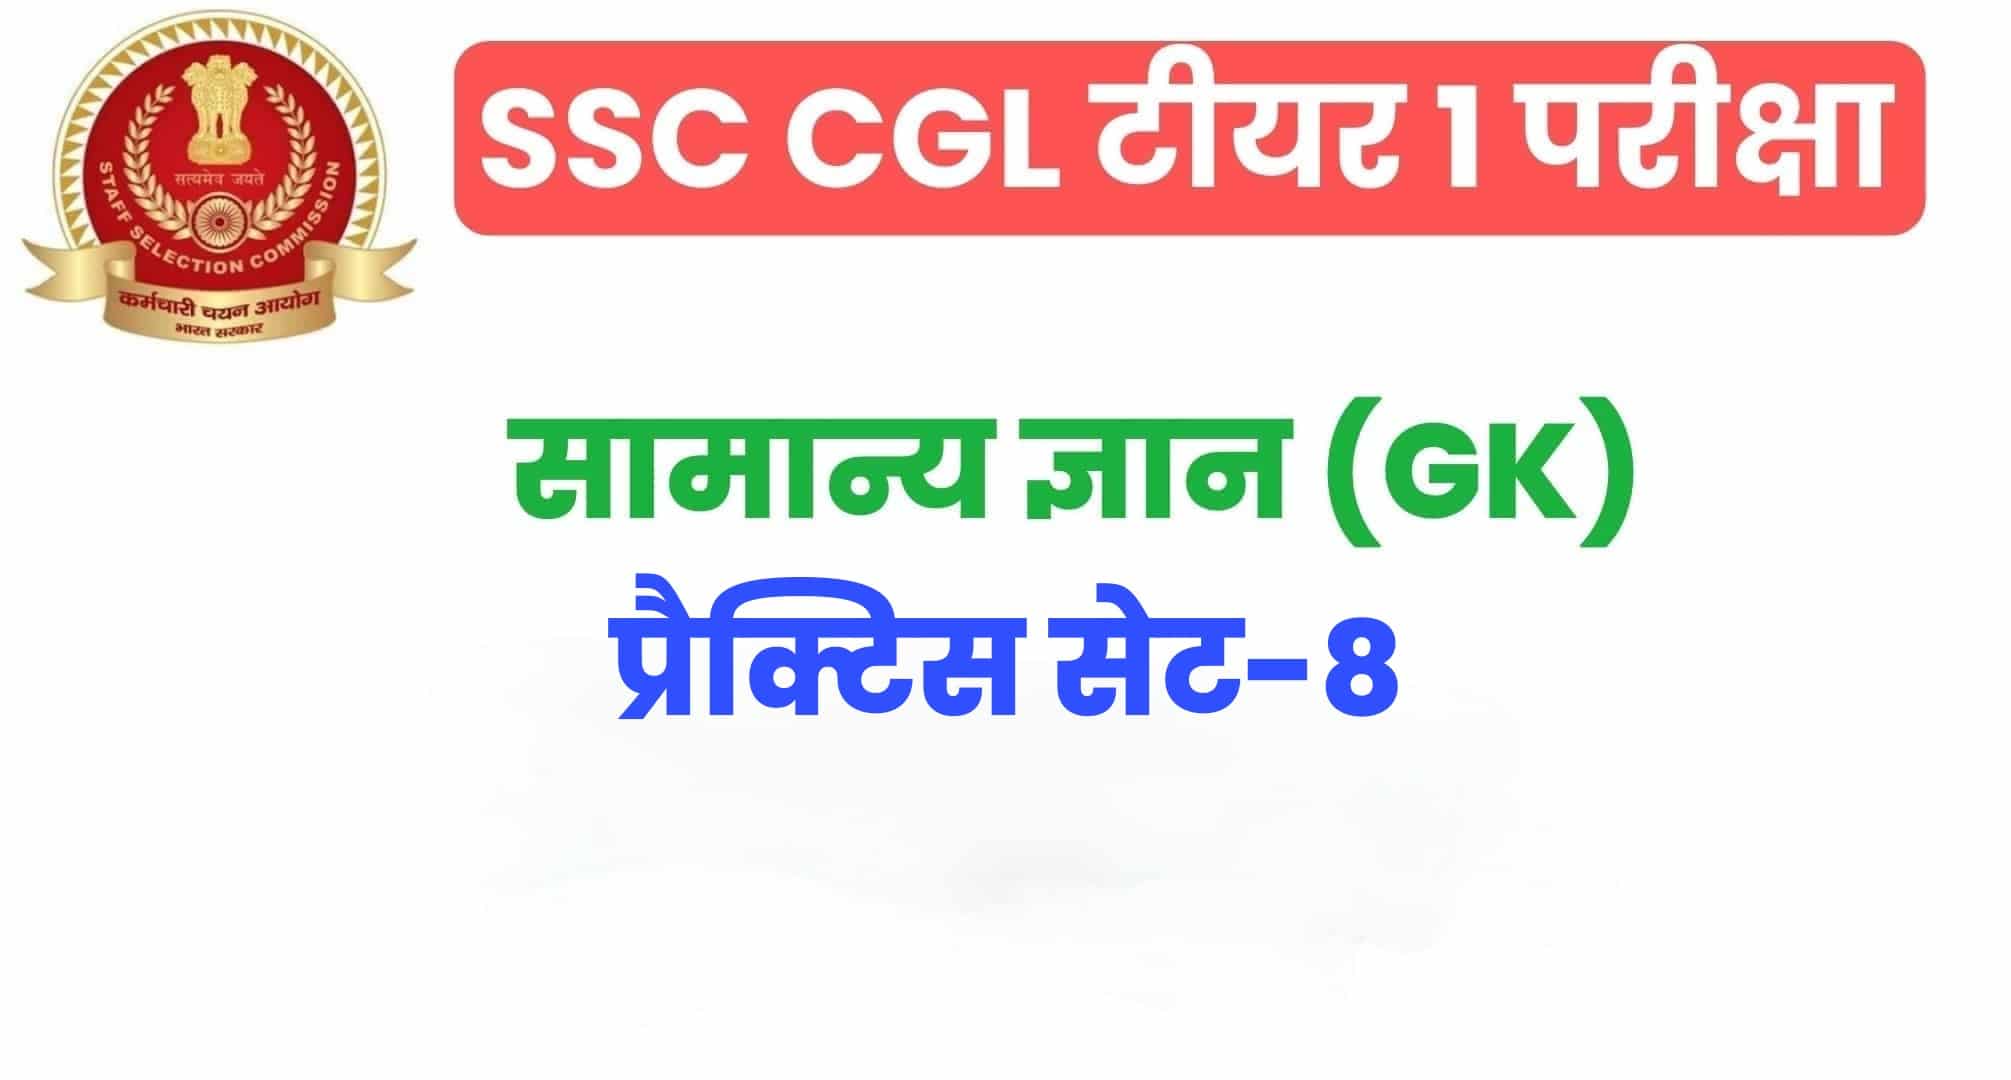 SSC CGL GK/GS प्रैक्टिस सेट 8 :  सामान्य ज्ञान के 25 अतिमहत्वपूर्ण प्रश्न, परीक्षा से पहले जरूर अध्ययन करें